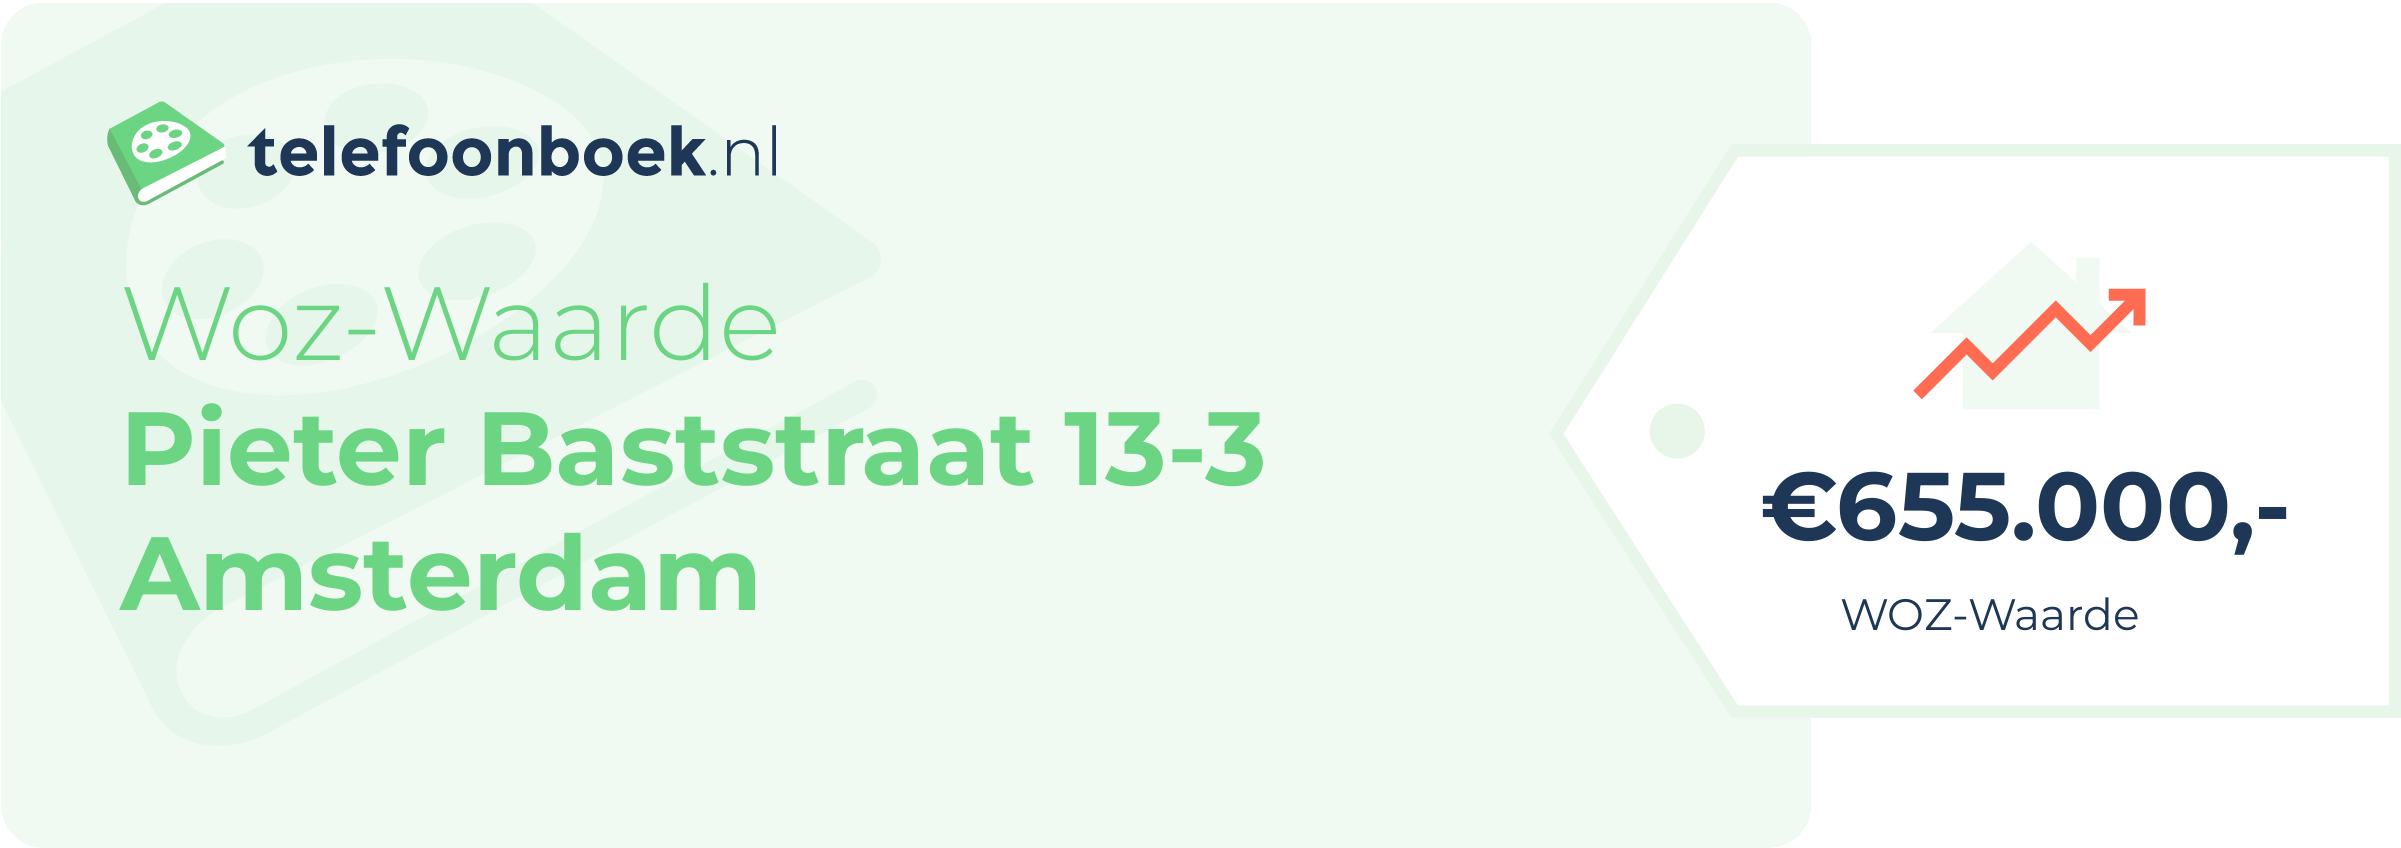 WOZ-waarde Pieter Baststraat 13-3 Amsterdam